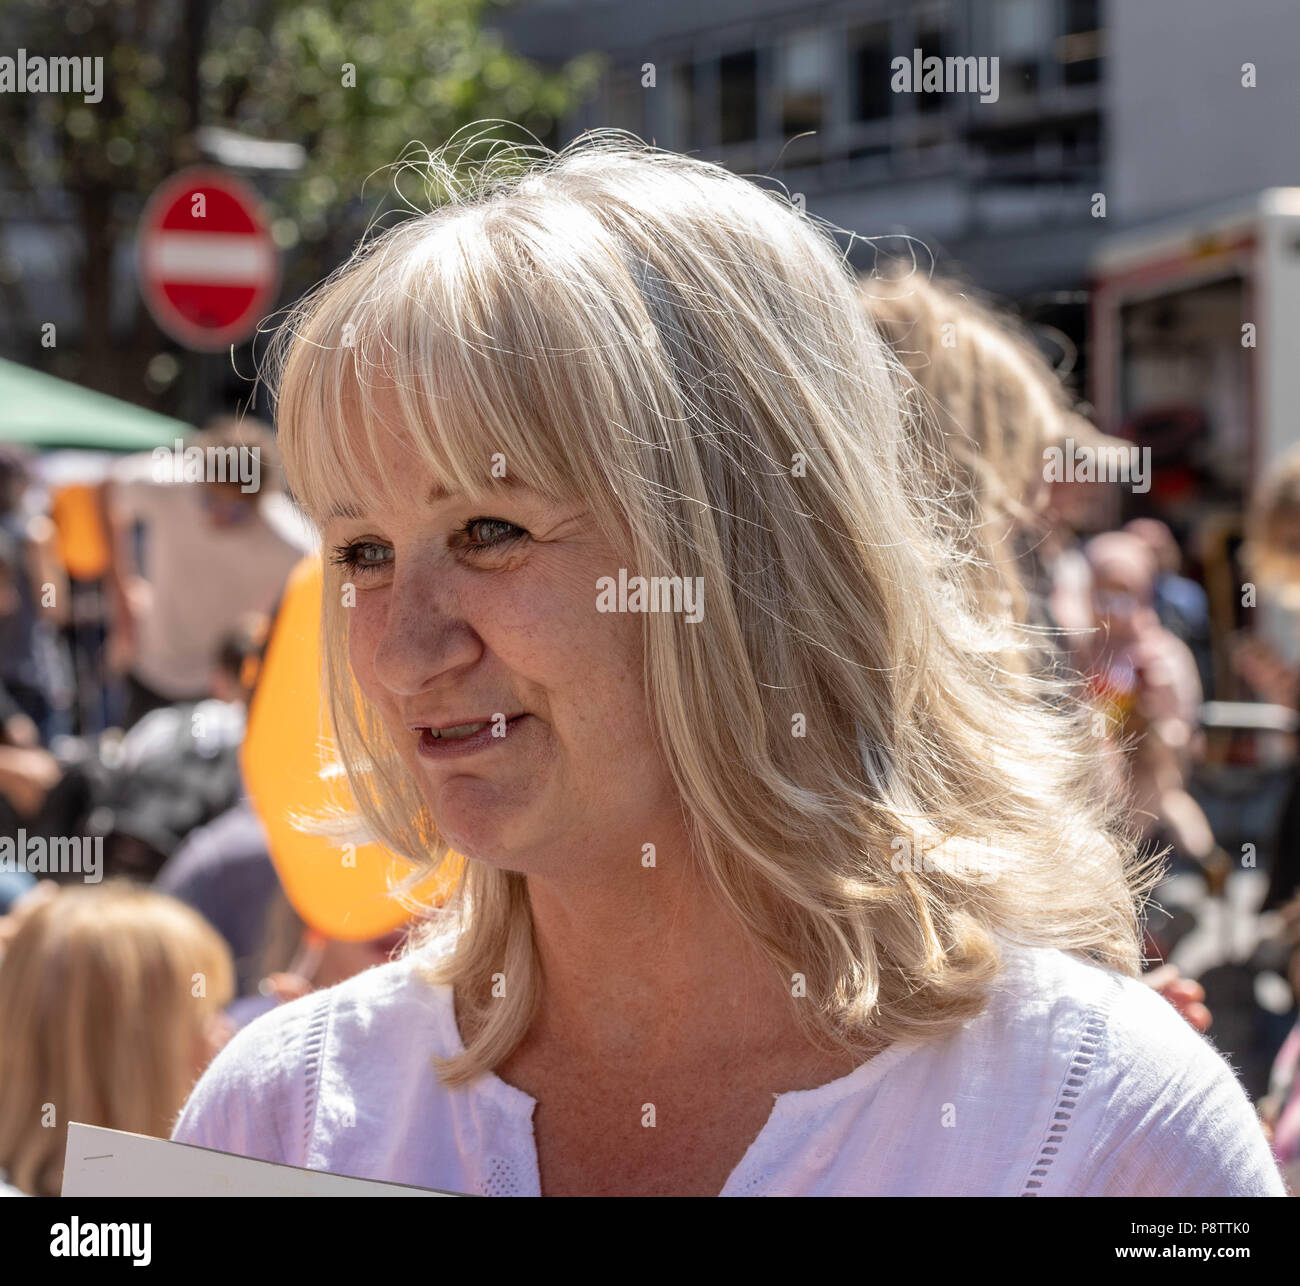 Londres, le 13 Juillet 2018 Mars femme -Mettre l'anti bruit démonstration trump illustré Helen Lederer Credit Ian Davidson/Alamy Live News Banque D'Images